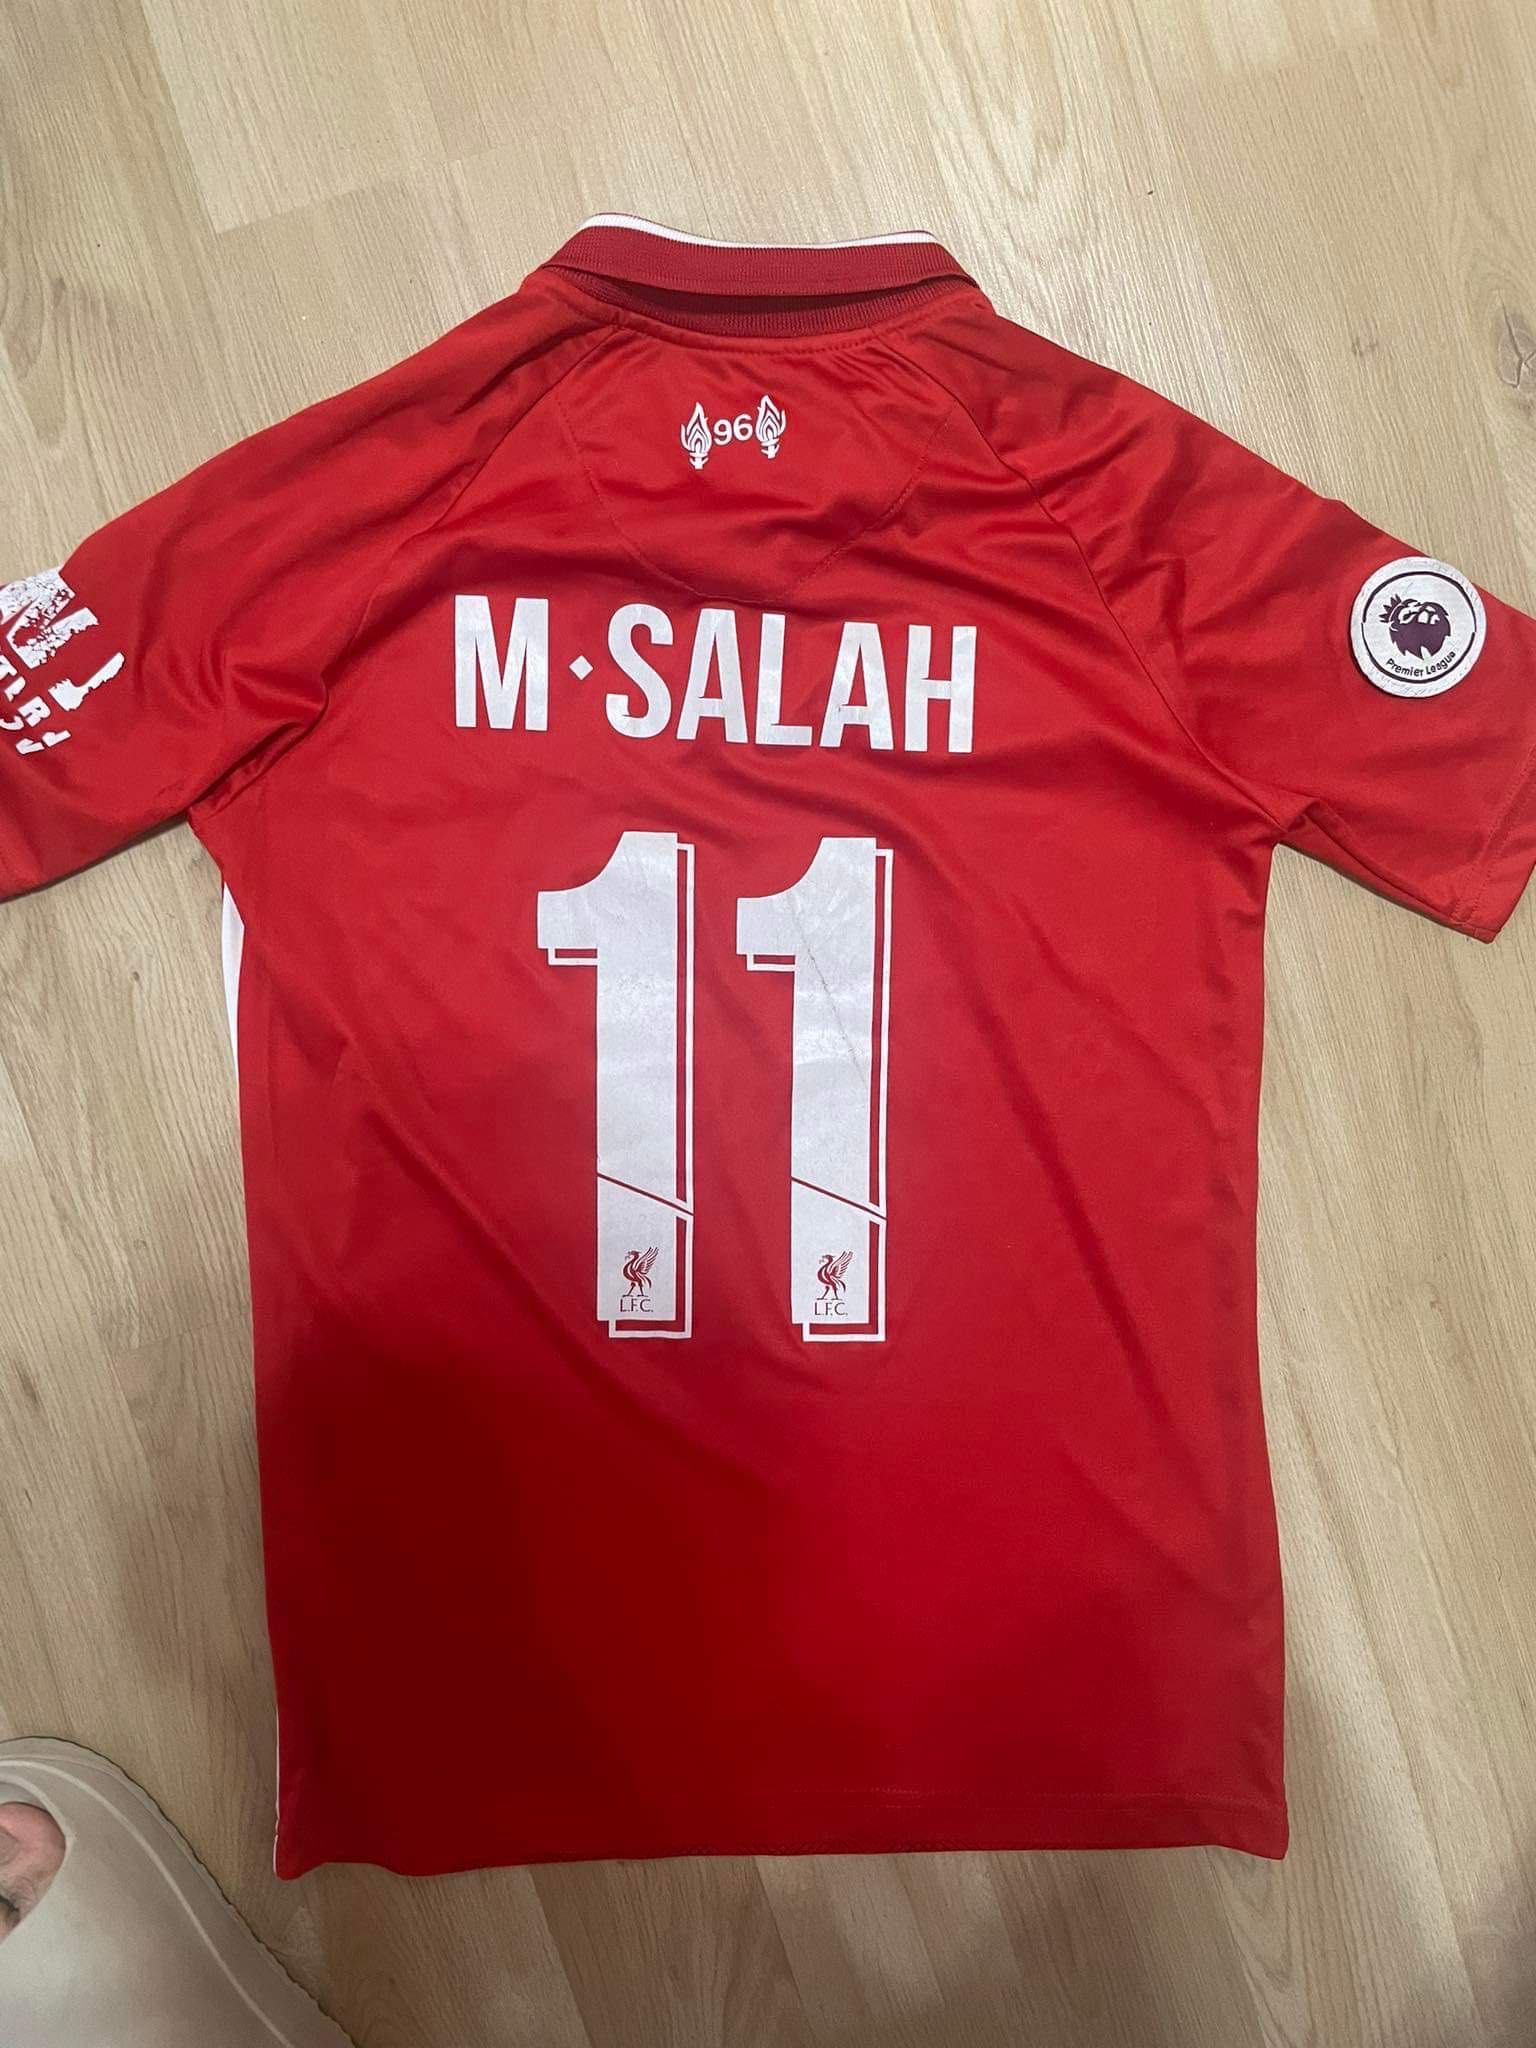 Liverpool x Salah11